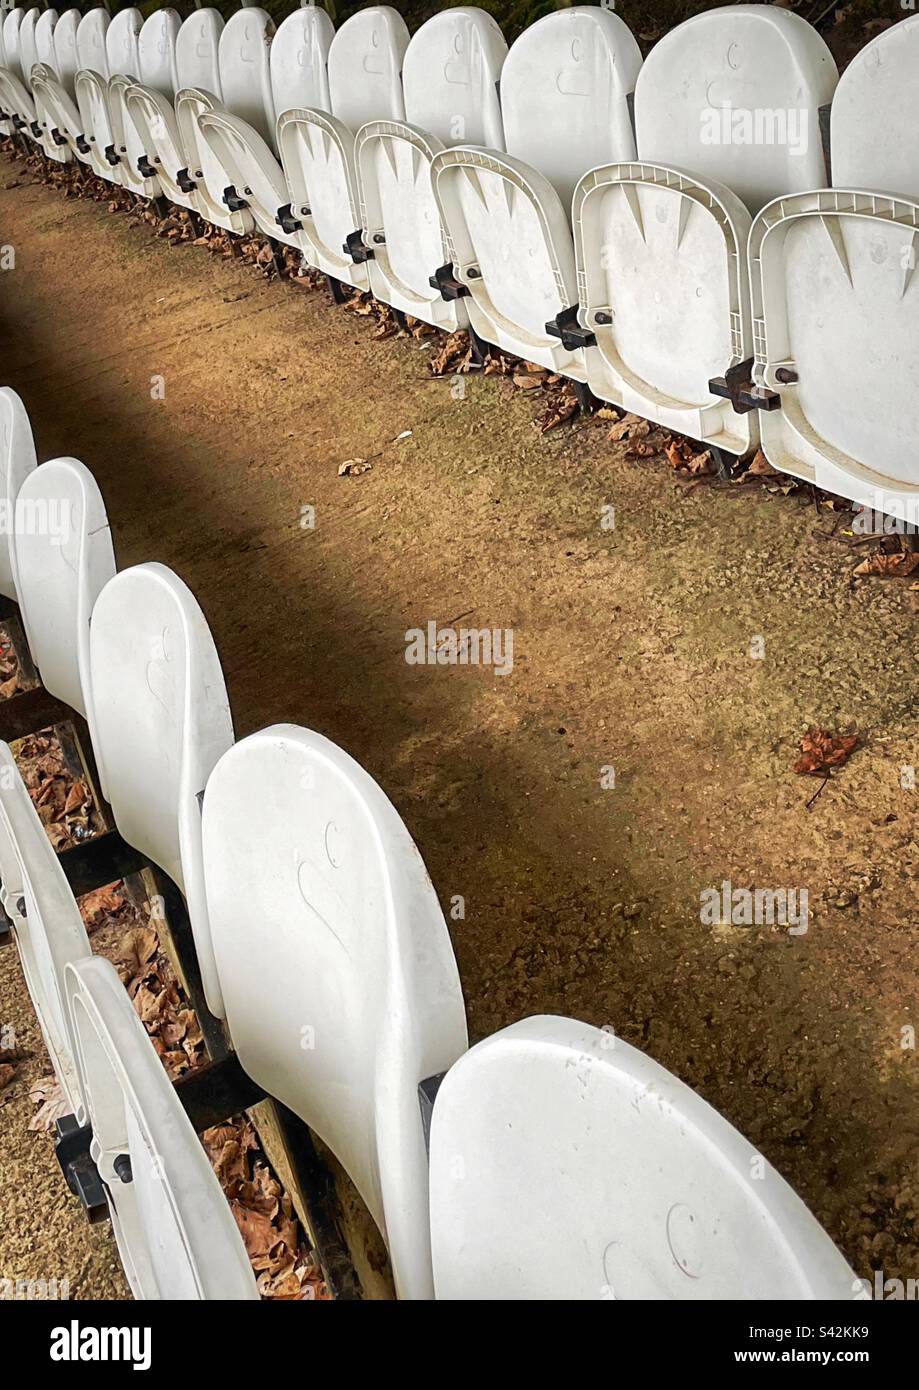 Le foglie autunnali giacciono a terra sotto i sedili in plastica bianca di un campo da calcio semi-professionale. Foto Stock